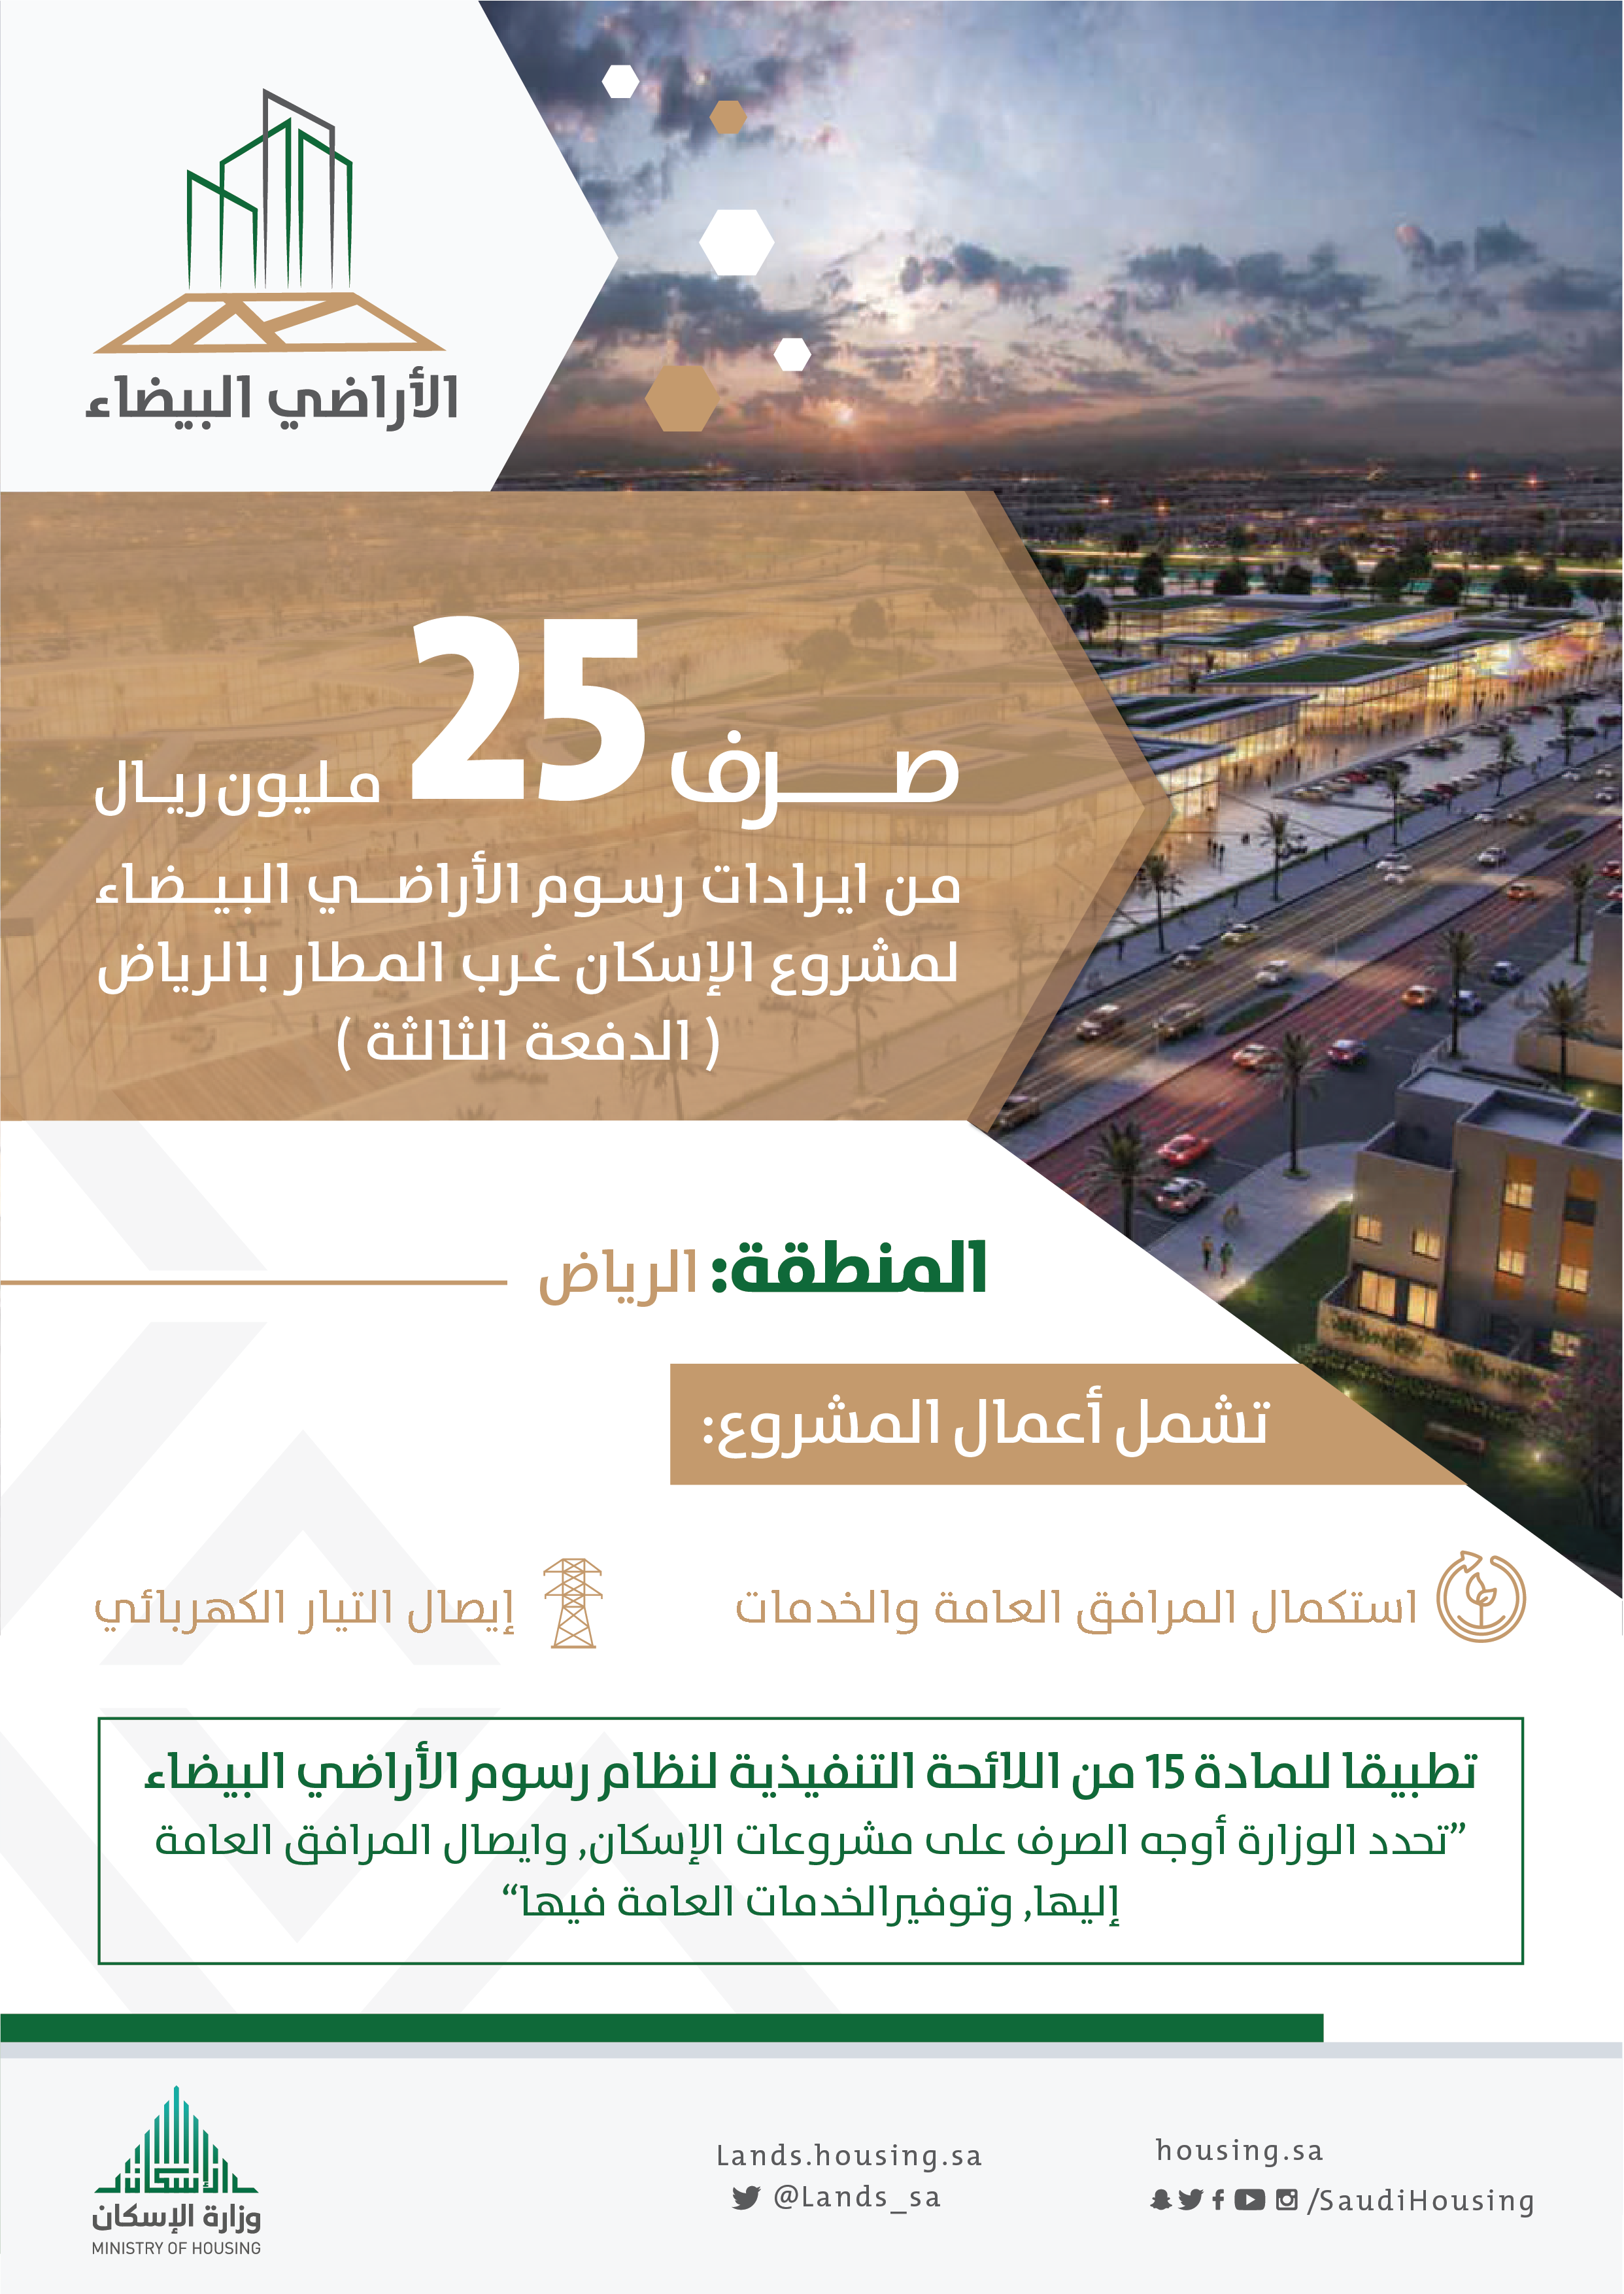 صرف 25 مليون ريال من إيرادات رسوم الأراضي لمشروع الإسكان غرب مطار الرياض